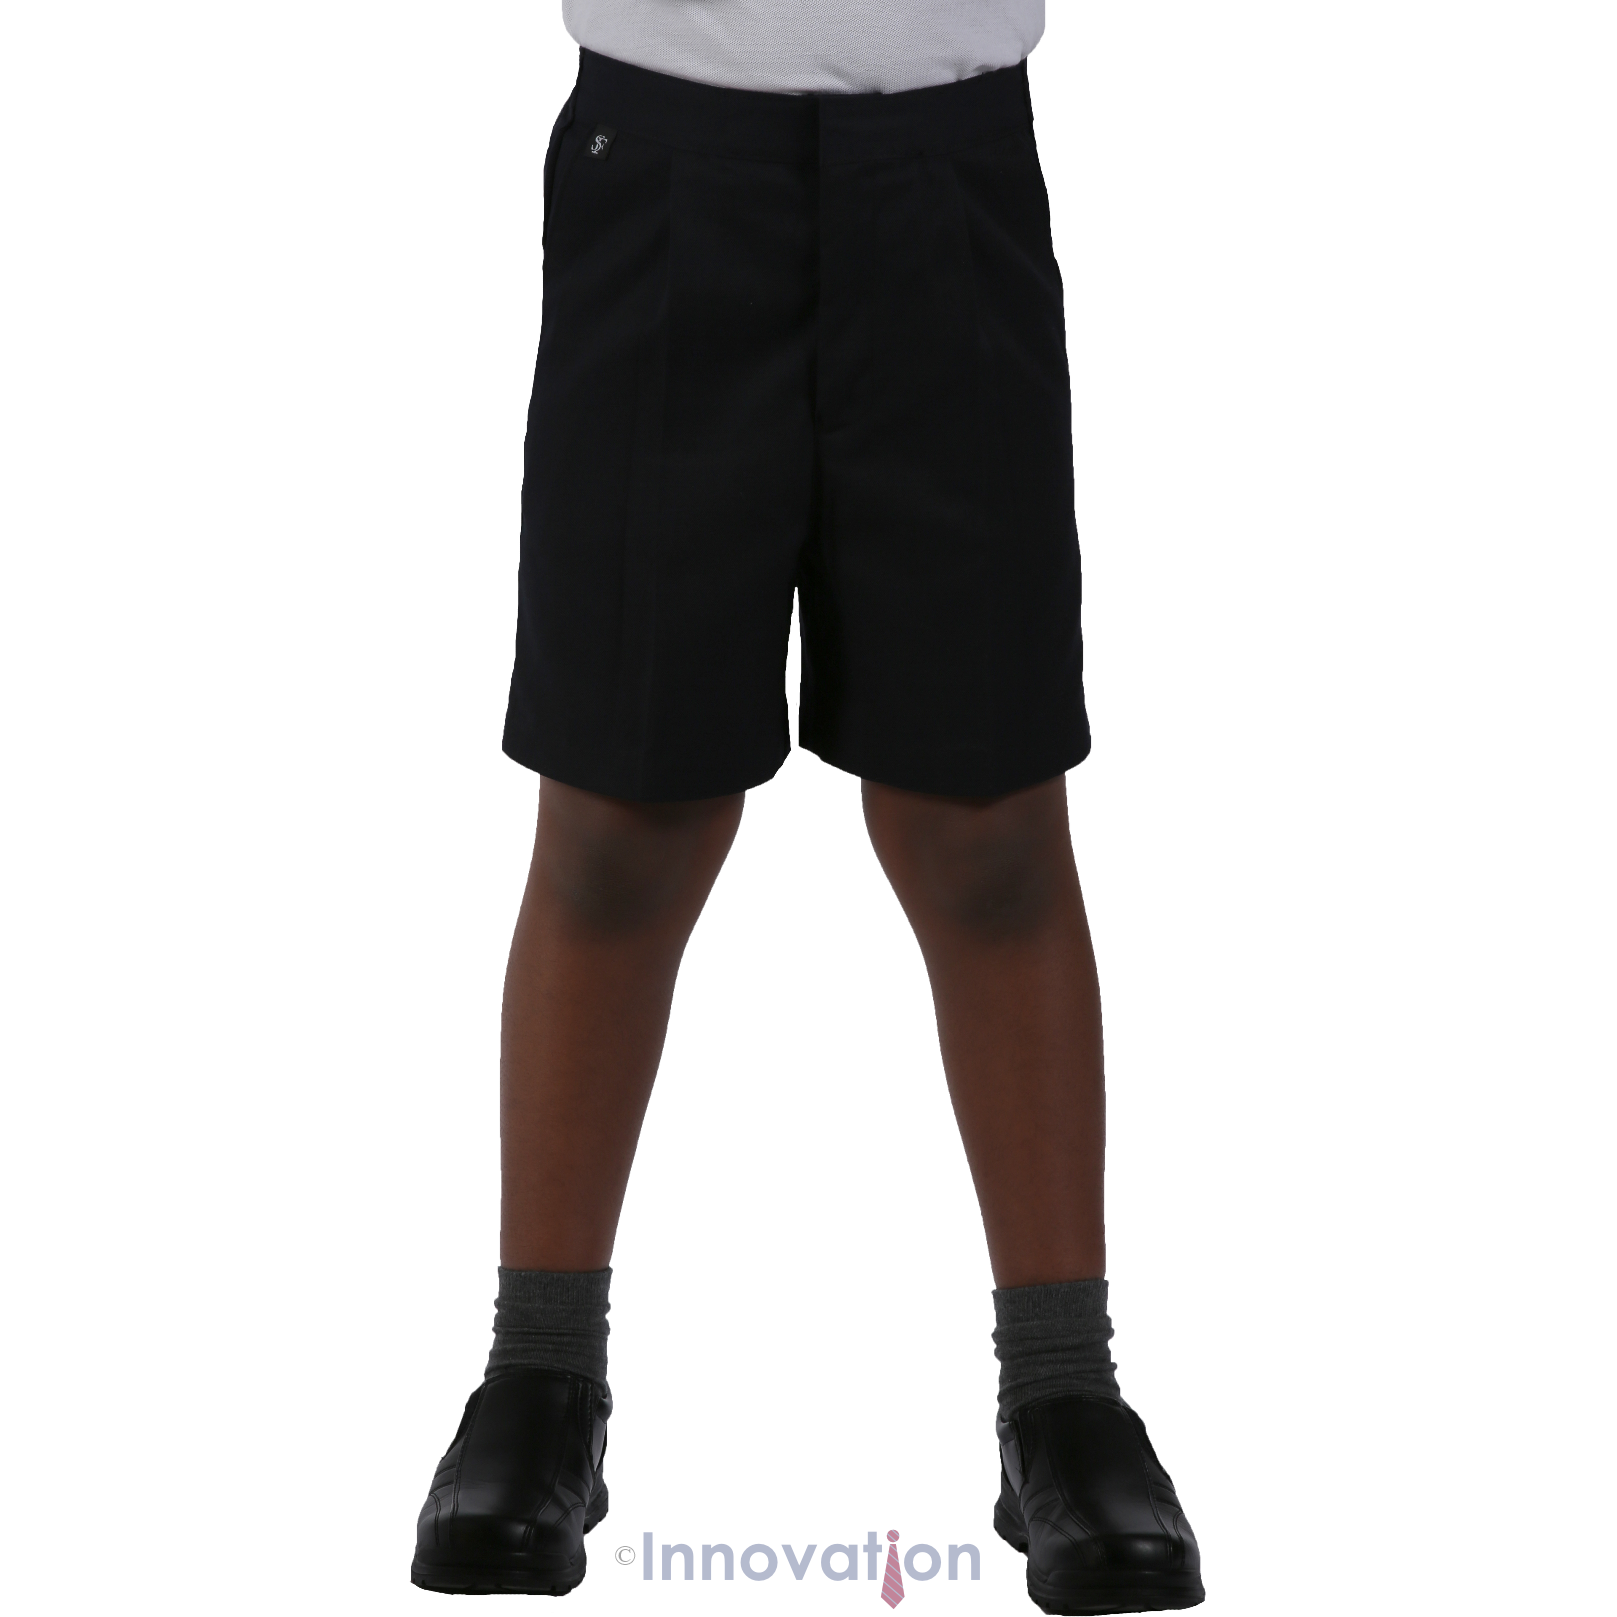 Shorts - Age 3 - 12 - Black